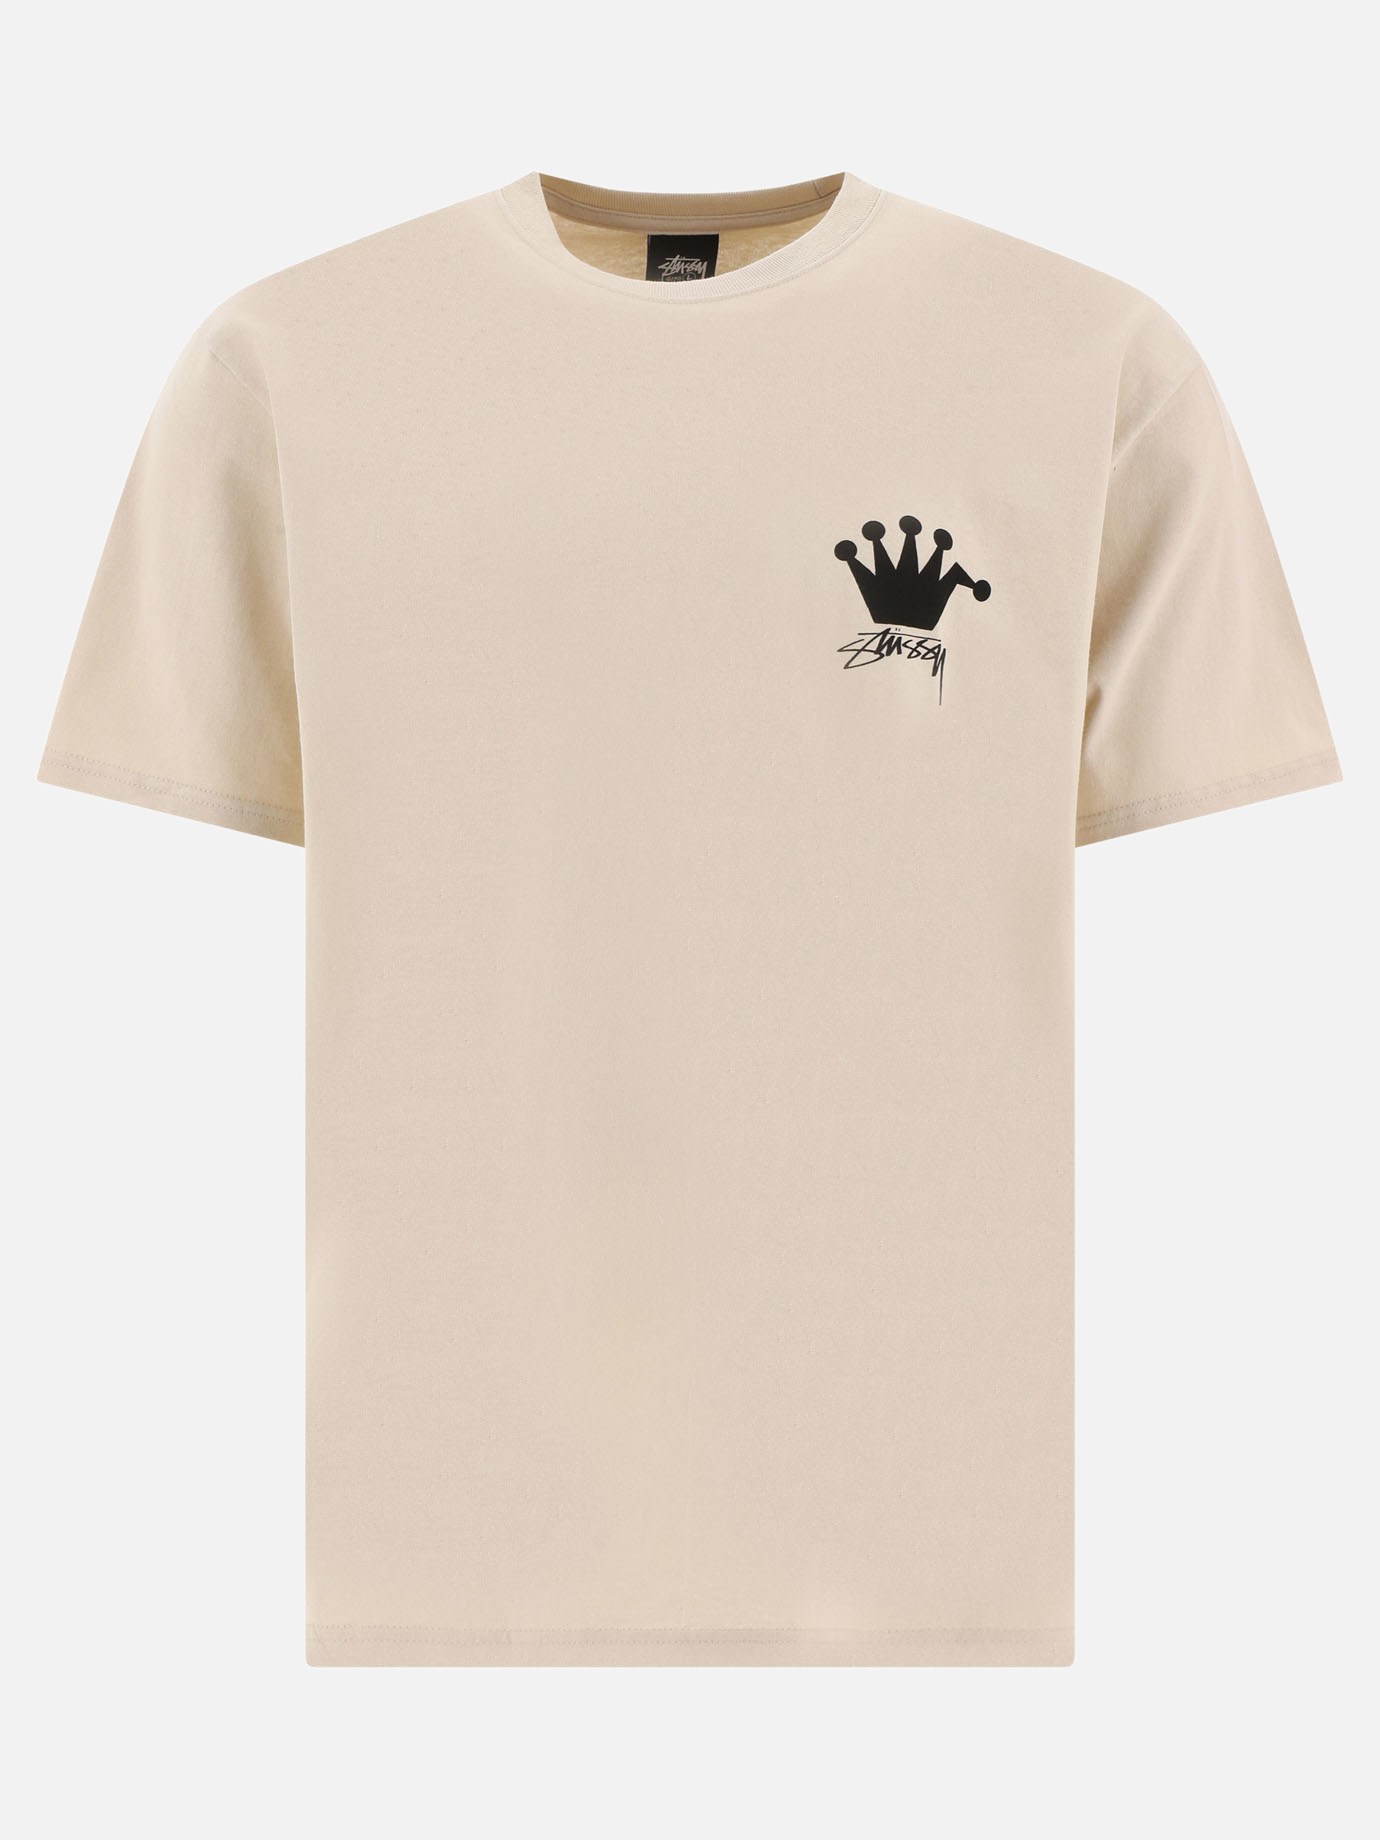 T-shirt  LB Crown by Stüssy - 3